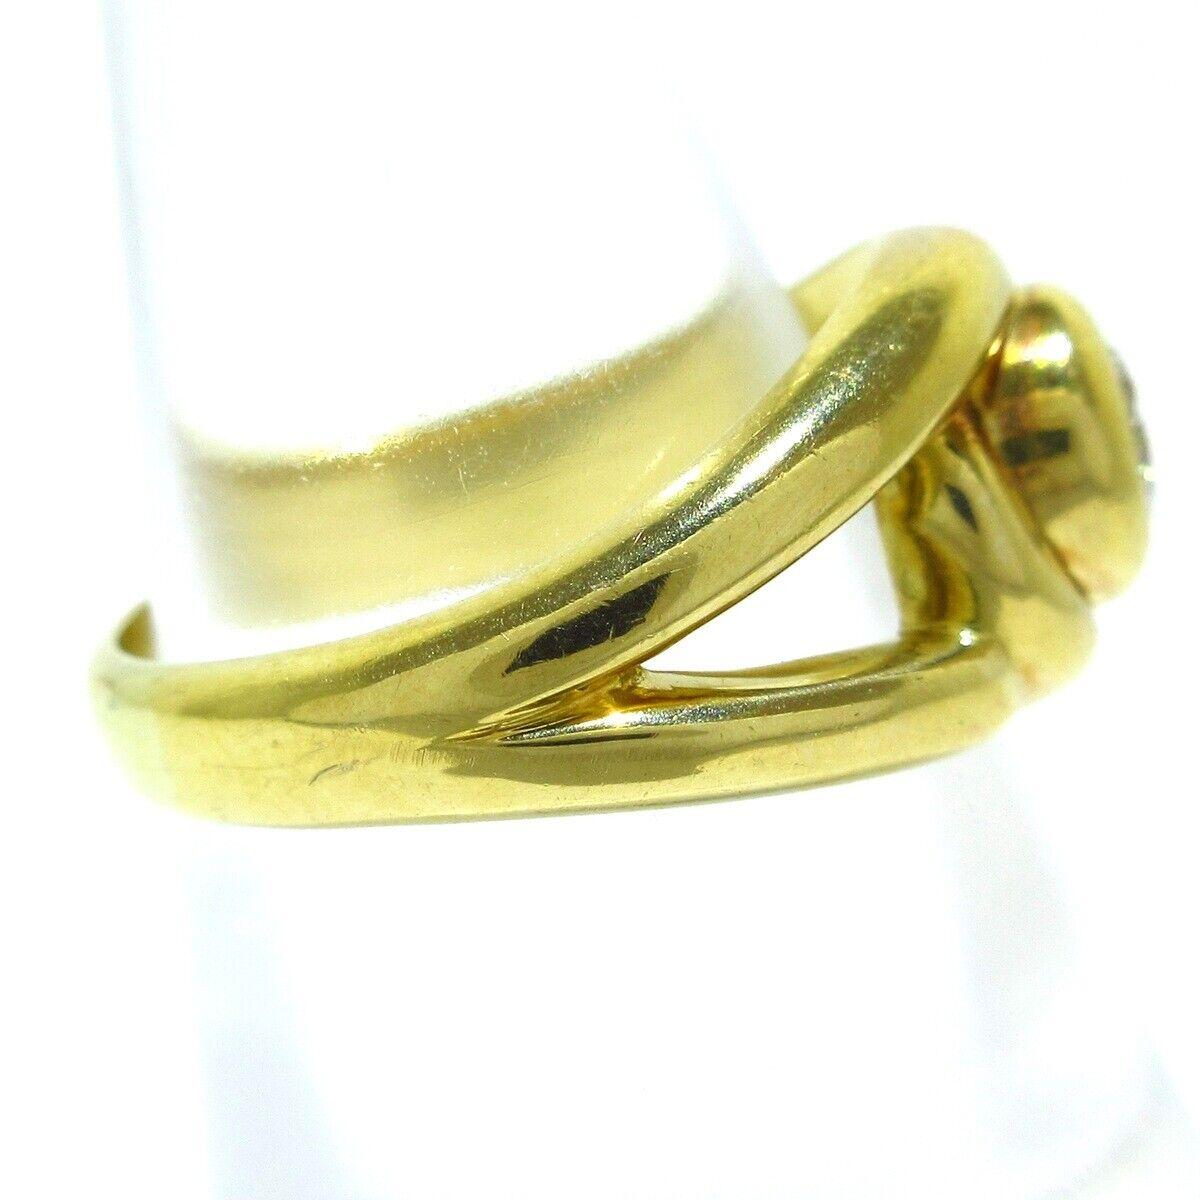 Cartier 18k Yellow Gold & Diamond Solitaire Ring Vintage Circa 1970s European Made


Voici votre chance d'acquérir une magnifique bague designr de grande collection.  C'est vraiment une belle pièce à un bon prix ! 

Détails :
Taille : (Taille US